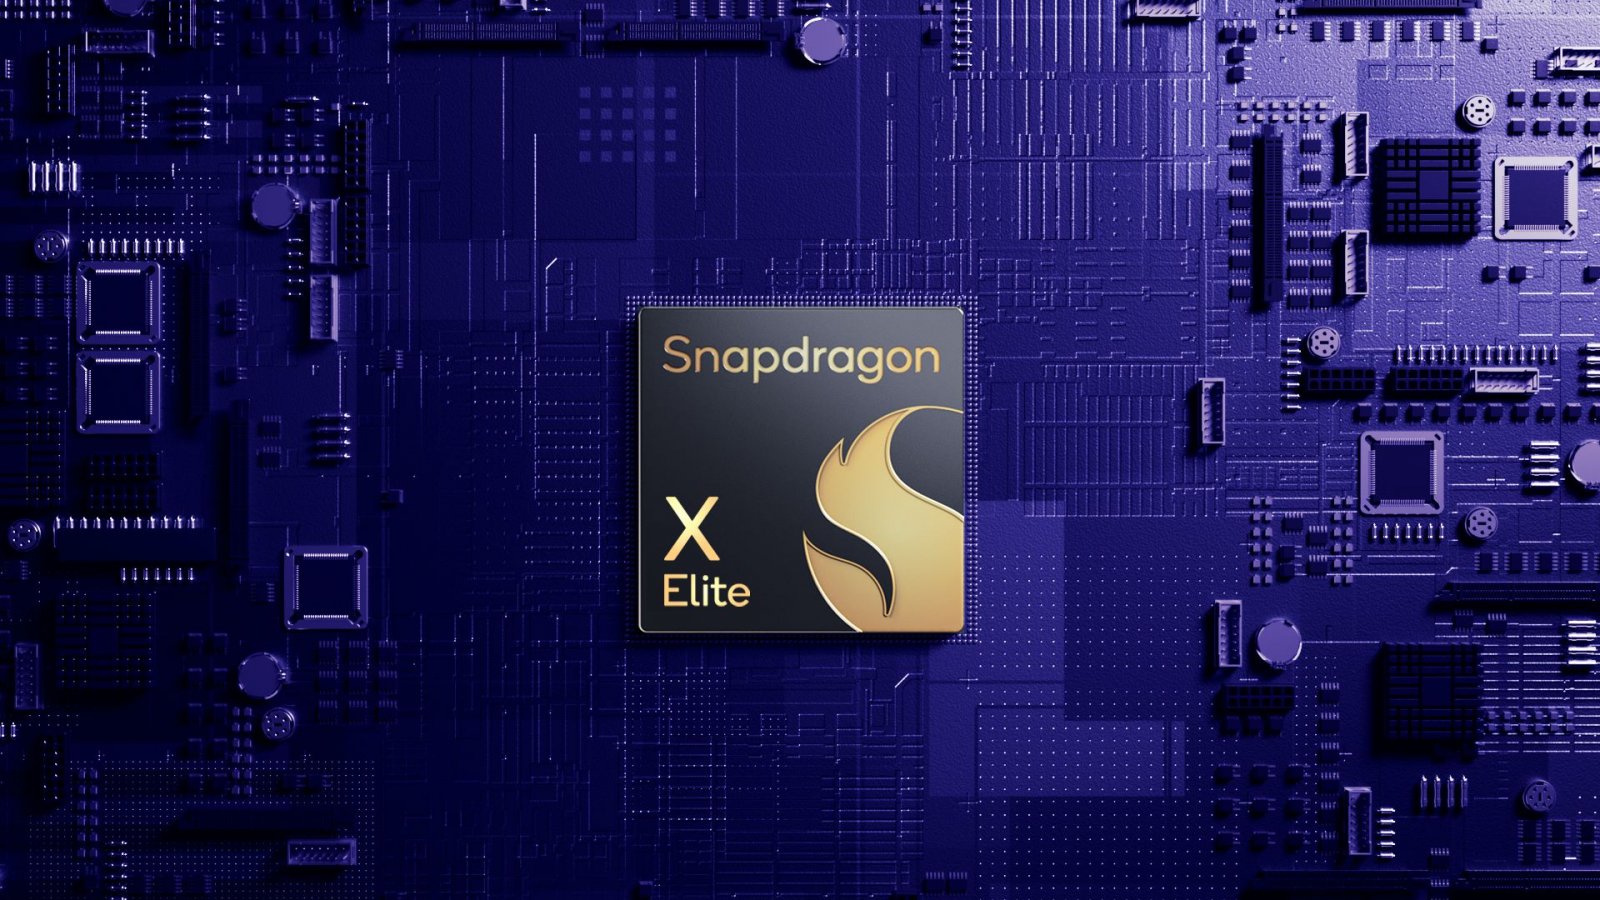 Snapdragon X Elite testato con Control: come si comporta?